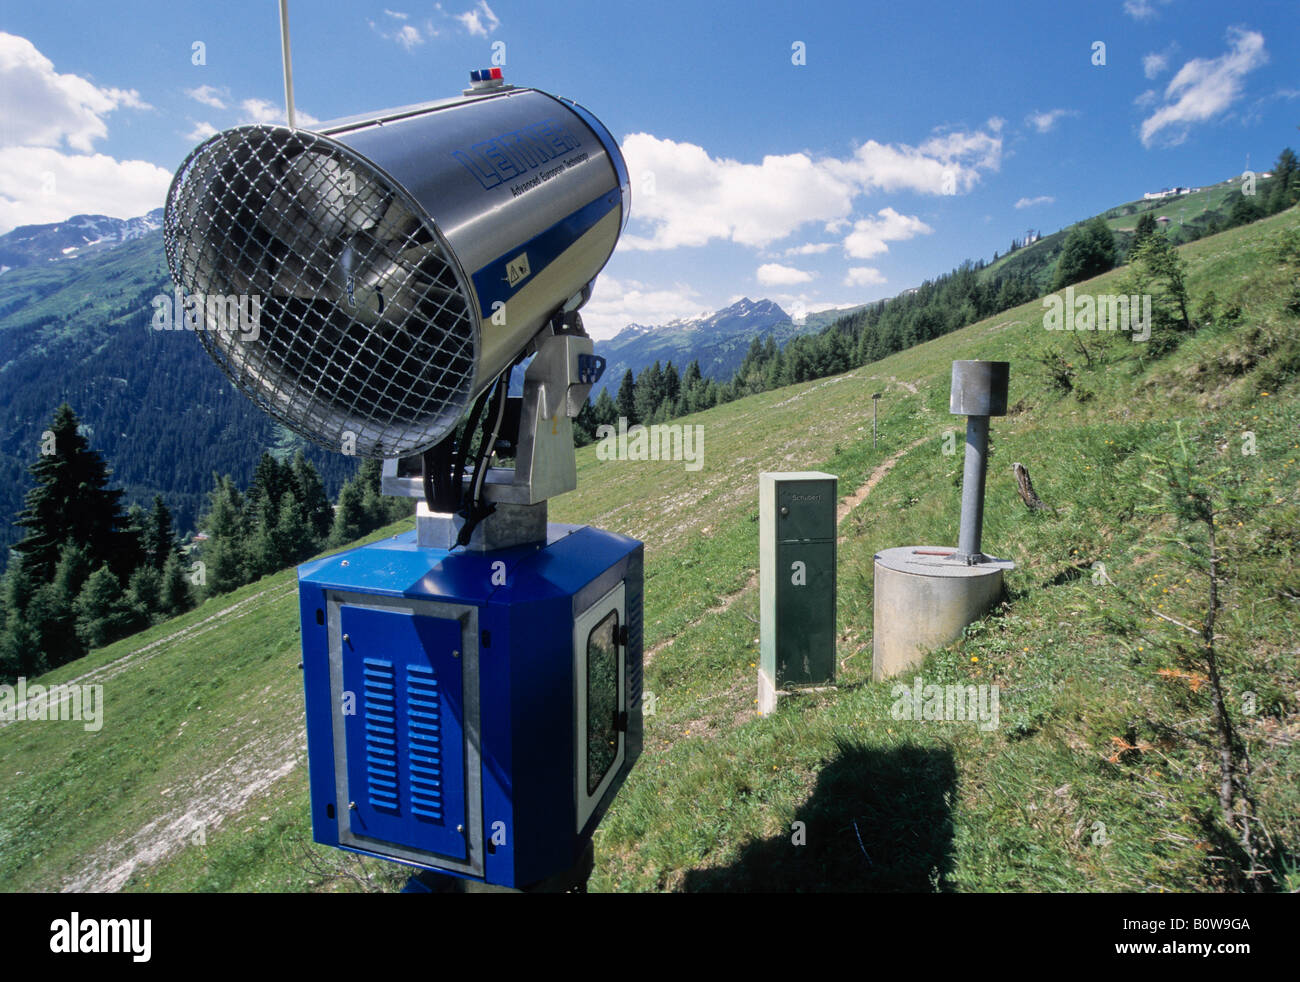 Schneekanone oder Kanone auf einer Skipiste in sommergrün, Alm, Alpen, Landeck, Tirol, Österreich, Europa Stockfoto